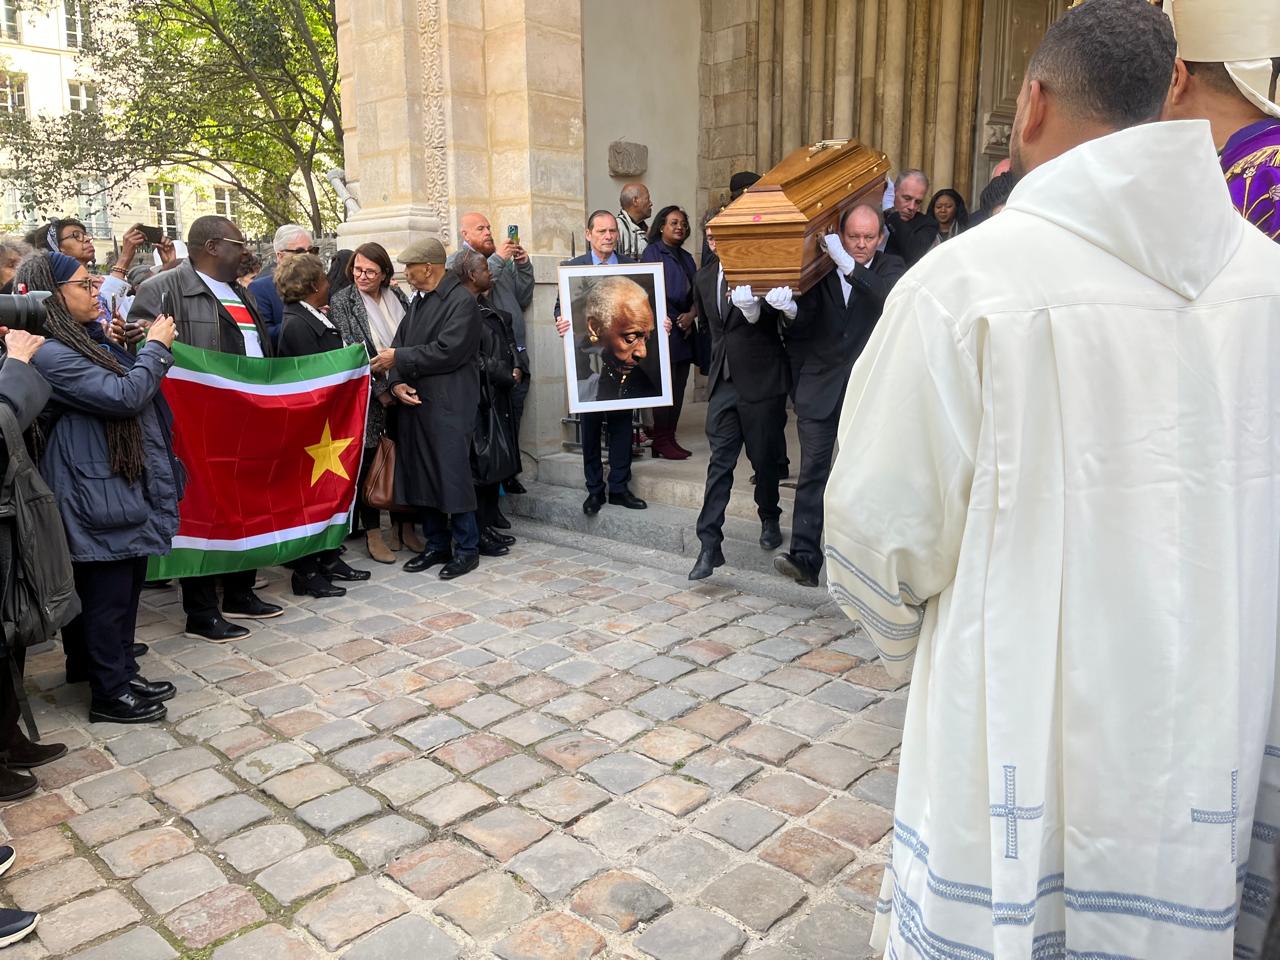     Emotion et fierté aux obsèques de Maryse Condé à Paris

